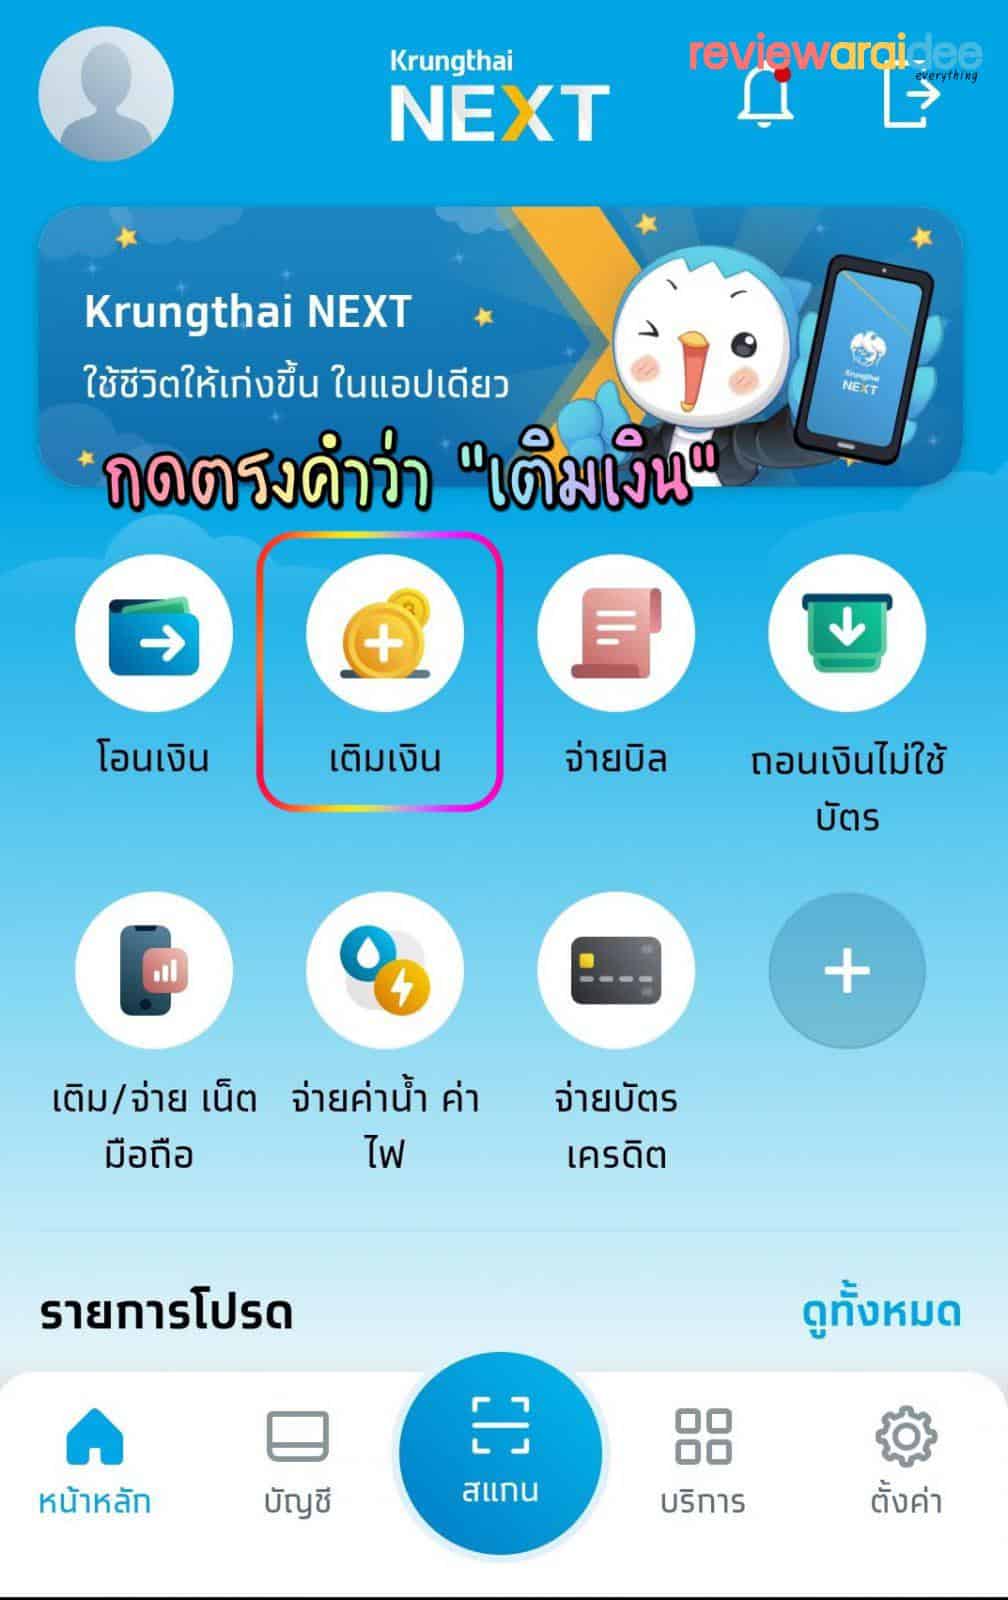 [แนะนำ] วิธีเติมเงินคนละครึ่งกรุงไทย (Krungthai NEXT) เข้าเป๋าตัง G-Wallet ทำอย่างไง ?